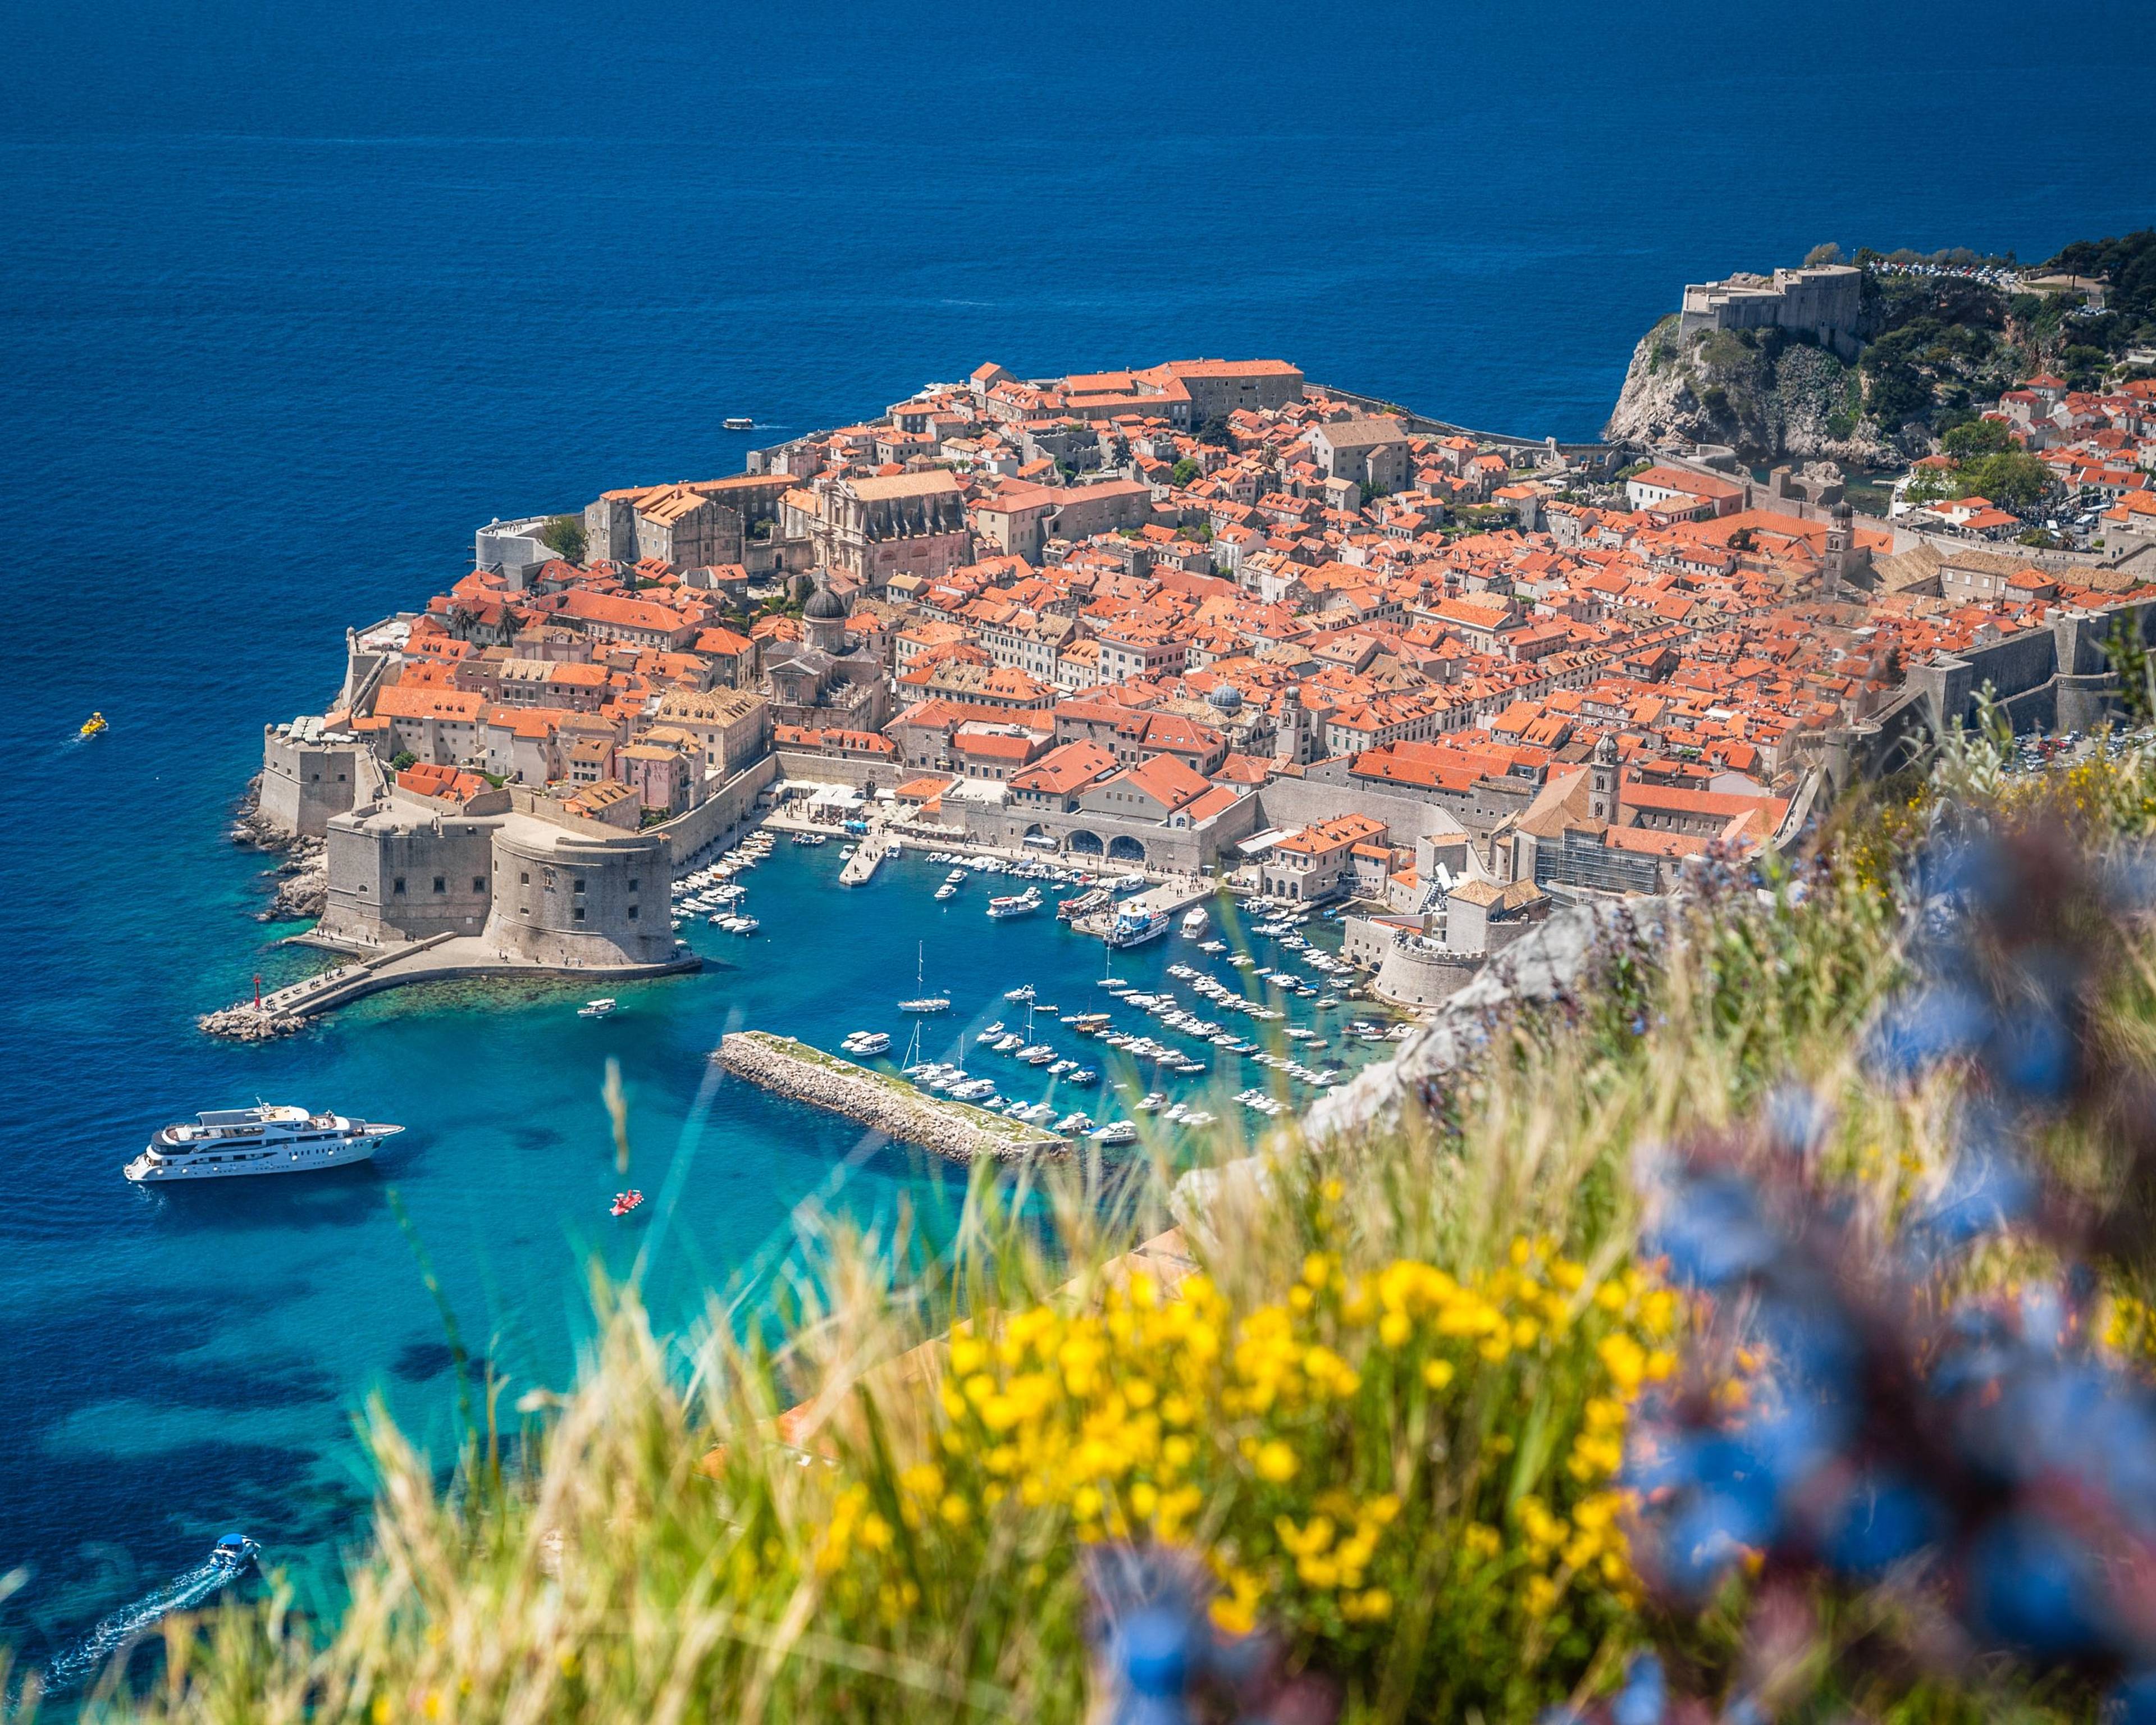 Croatie authentique, les plus belles villes de Dalmatie avec les îles, le lacs de Plitvice et le Monténégro